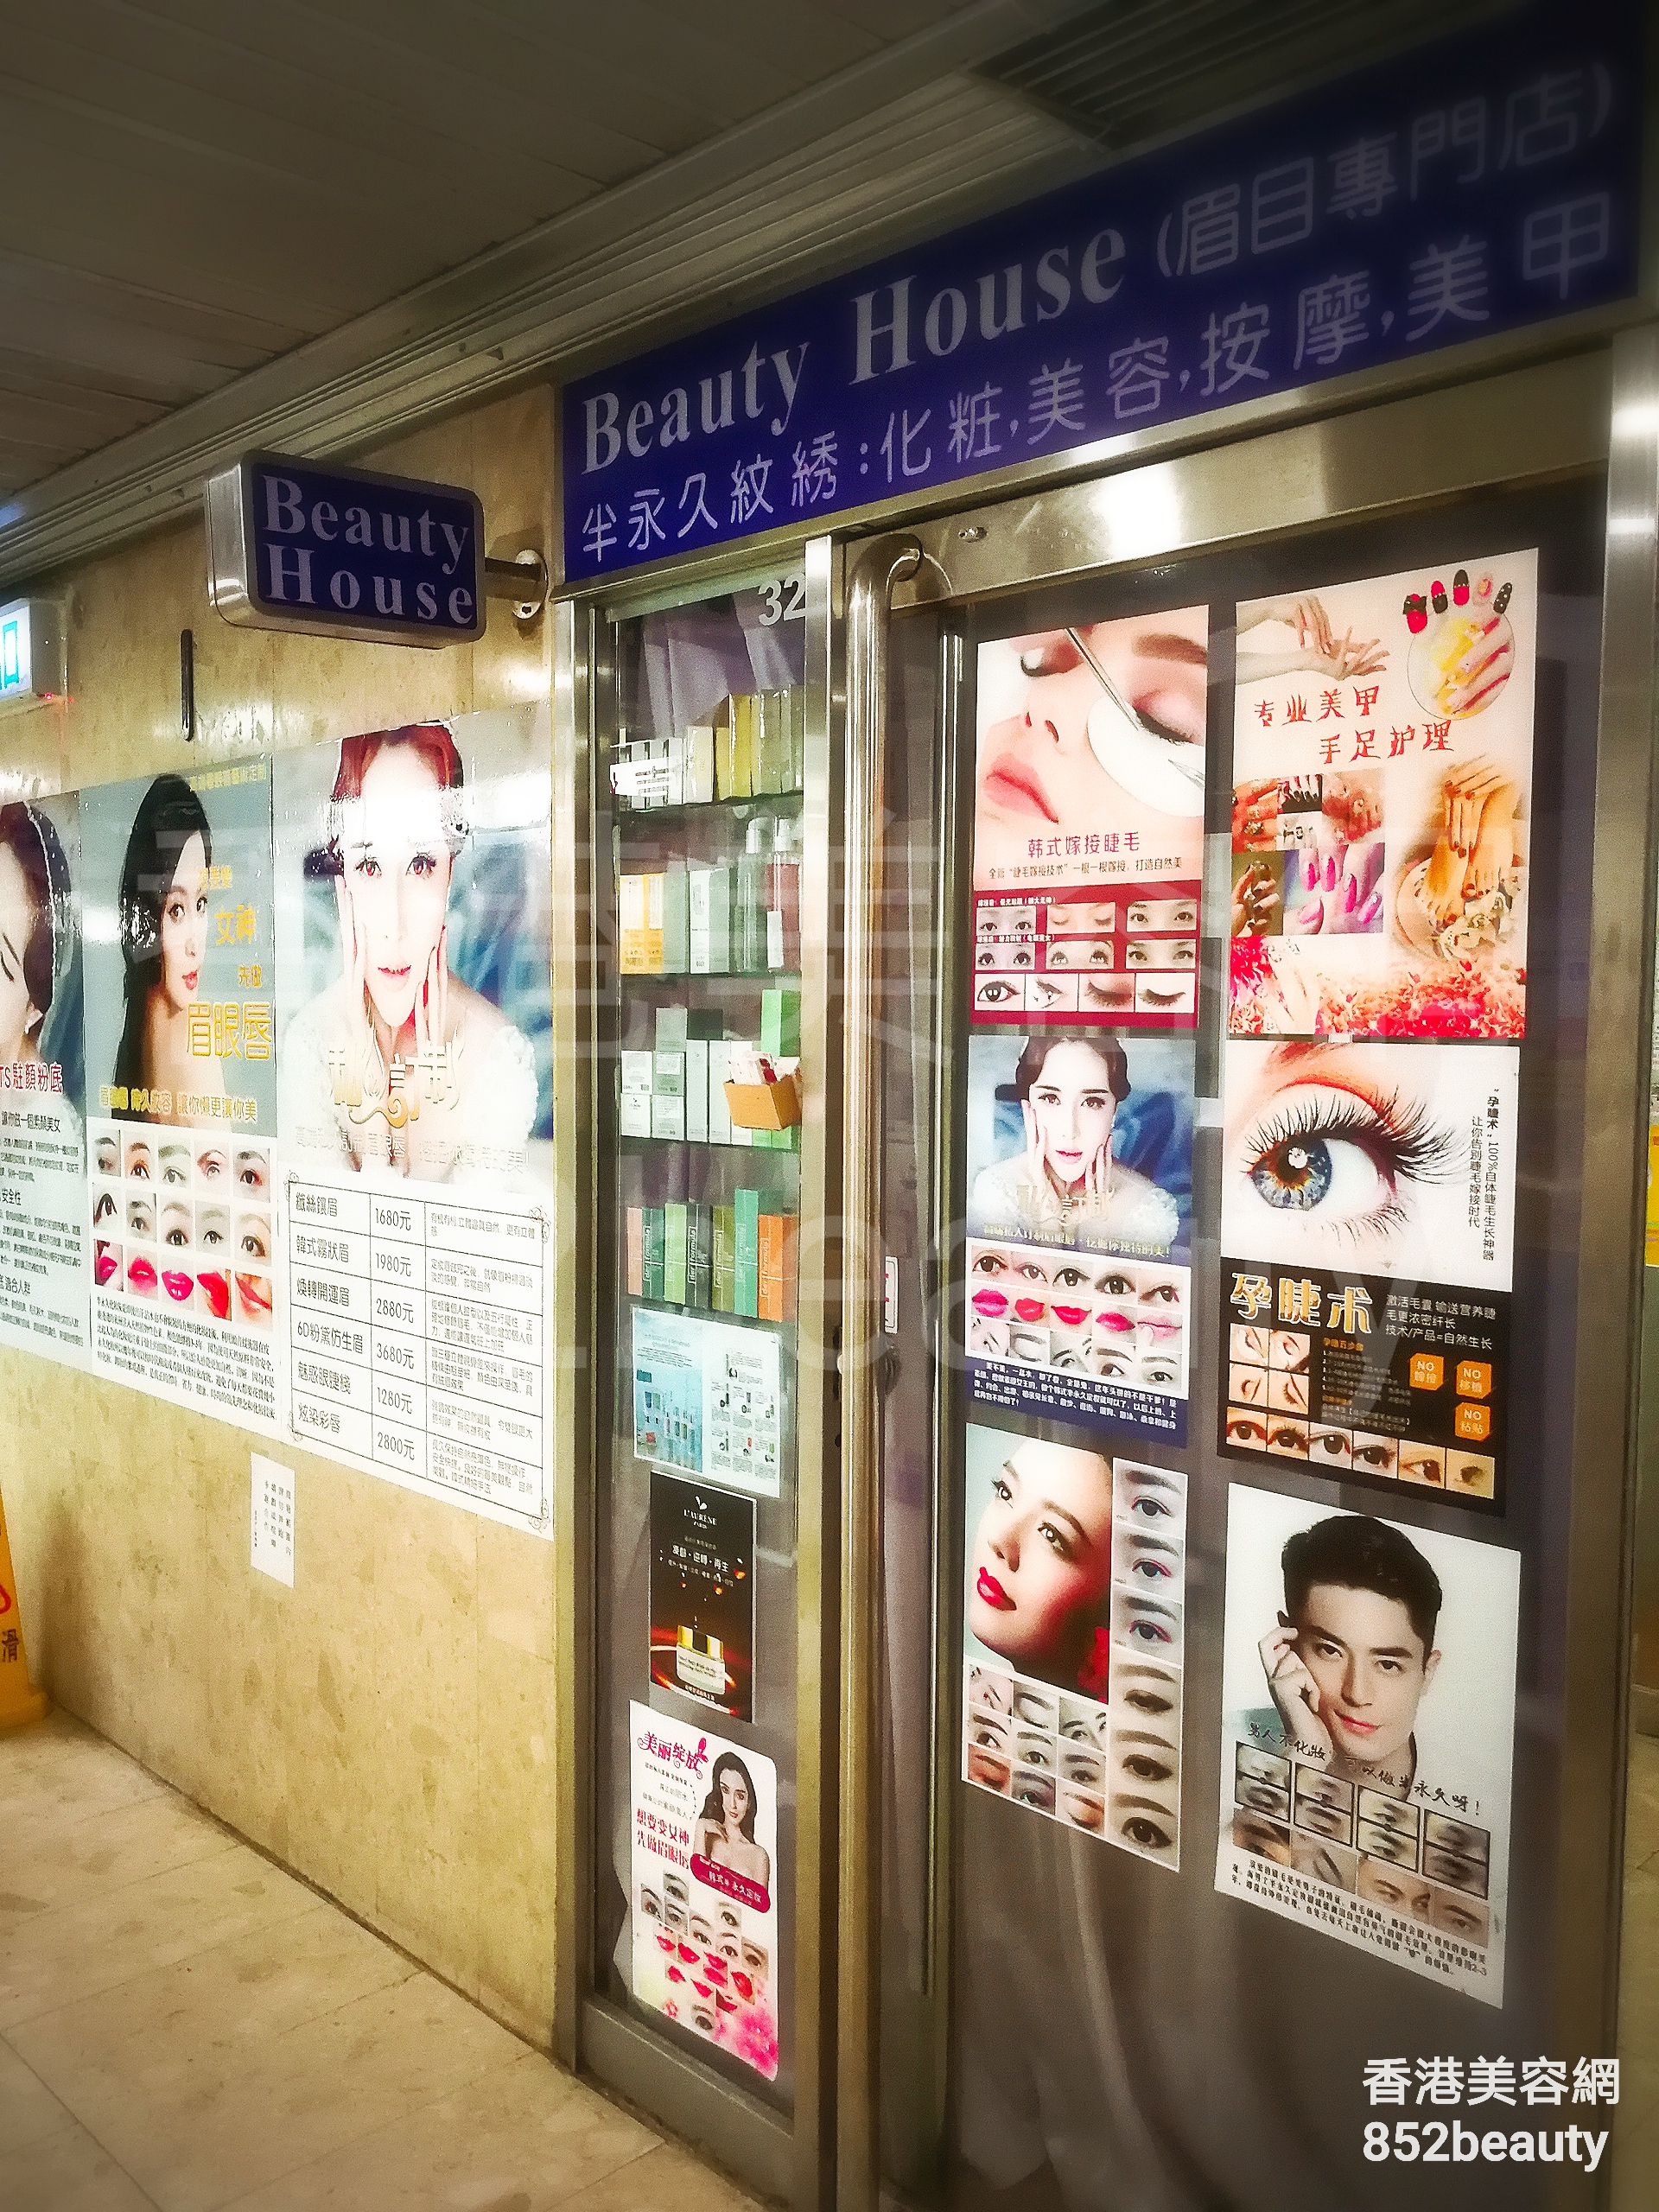 脫毛: Beauty house (眉目專門店)